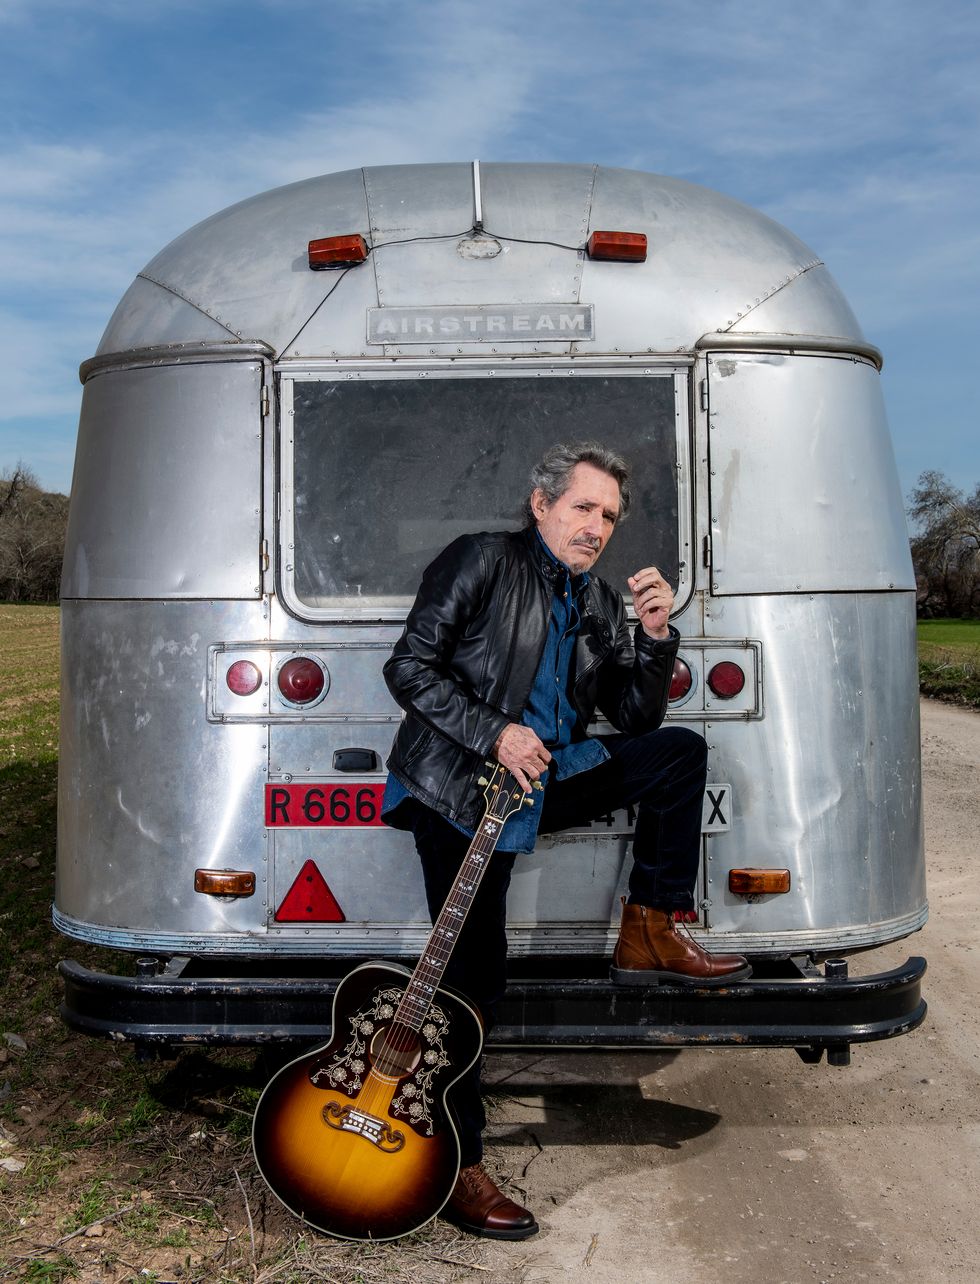 miguel rïos posa con una guitarra frente a una caravana